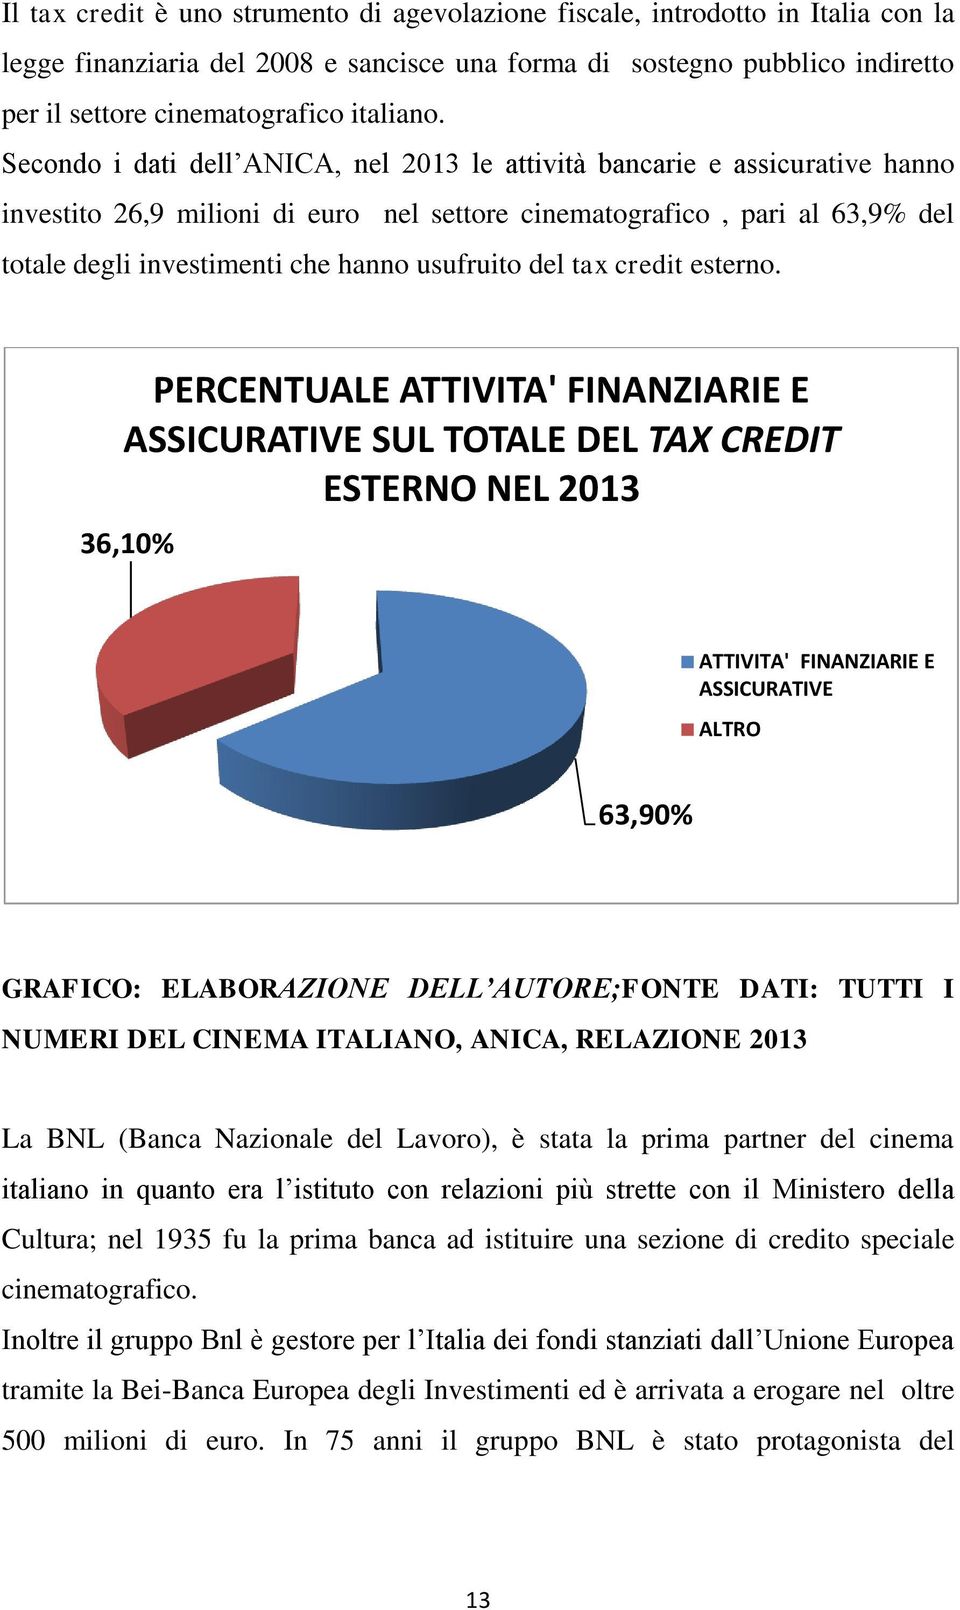 Secondo i dati dell ANICA, nel 2013 le attività bancarie e assicurative hanno investito 26,9 milioni di euro nel settore cinematografico, pari al 63,9% del totale degli investimenti che hanno